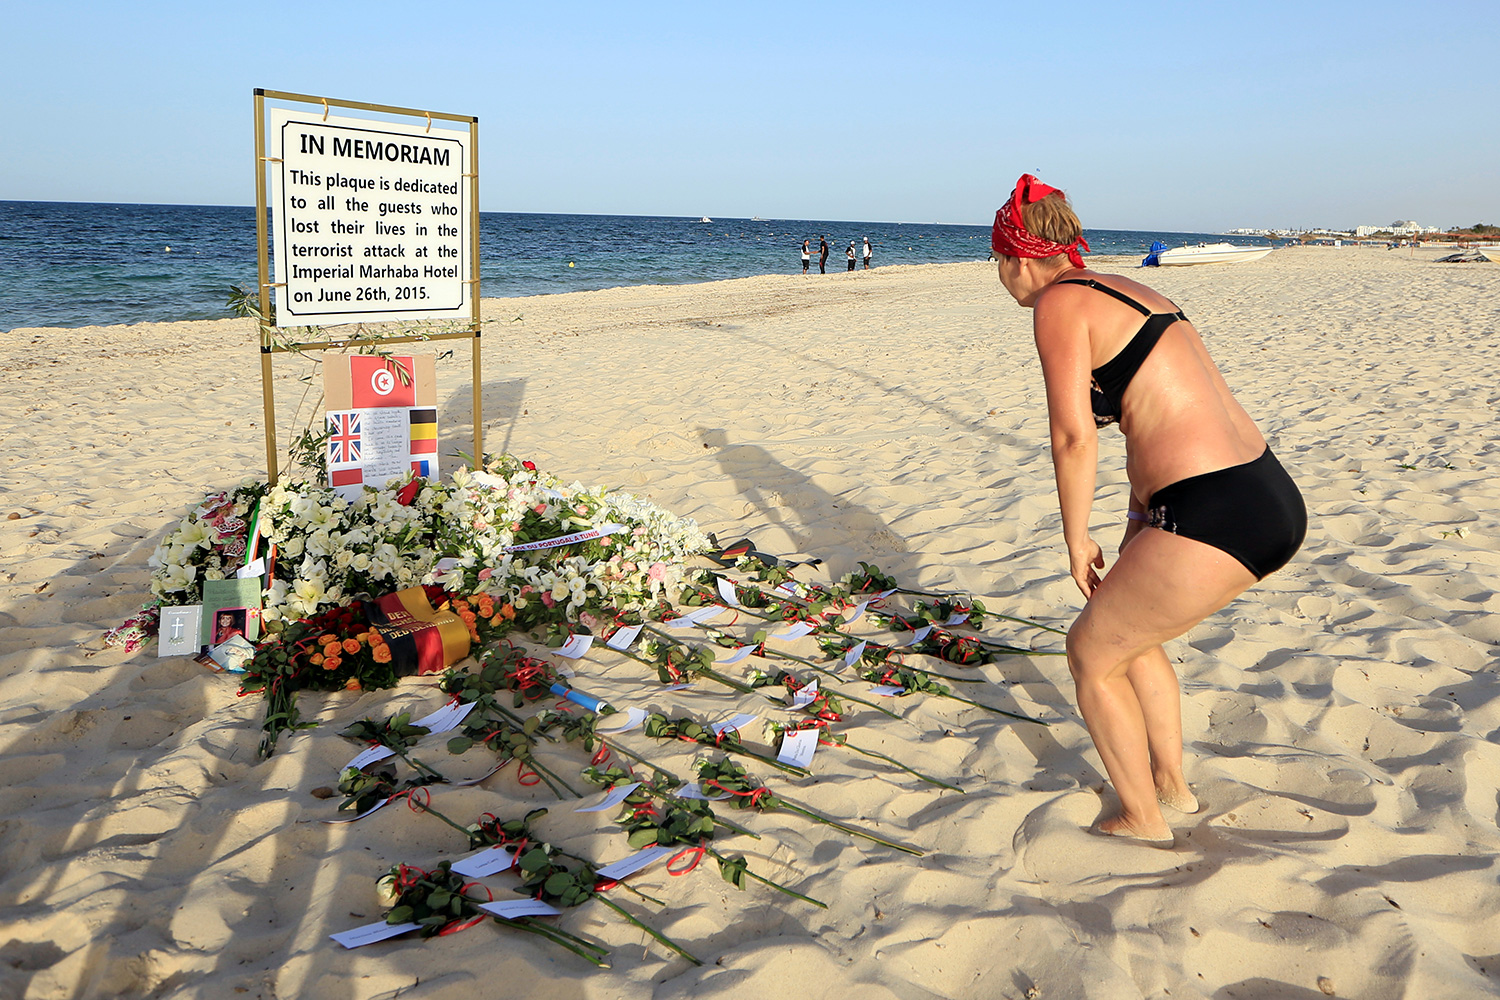 La policía retrasó su llegada de forma "deliberada e injustificada" al atentado de la playa de Túnez